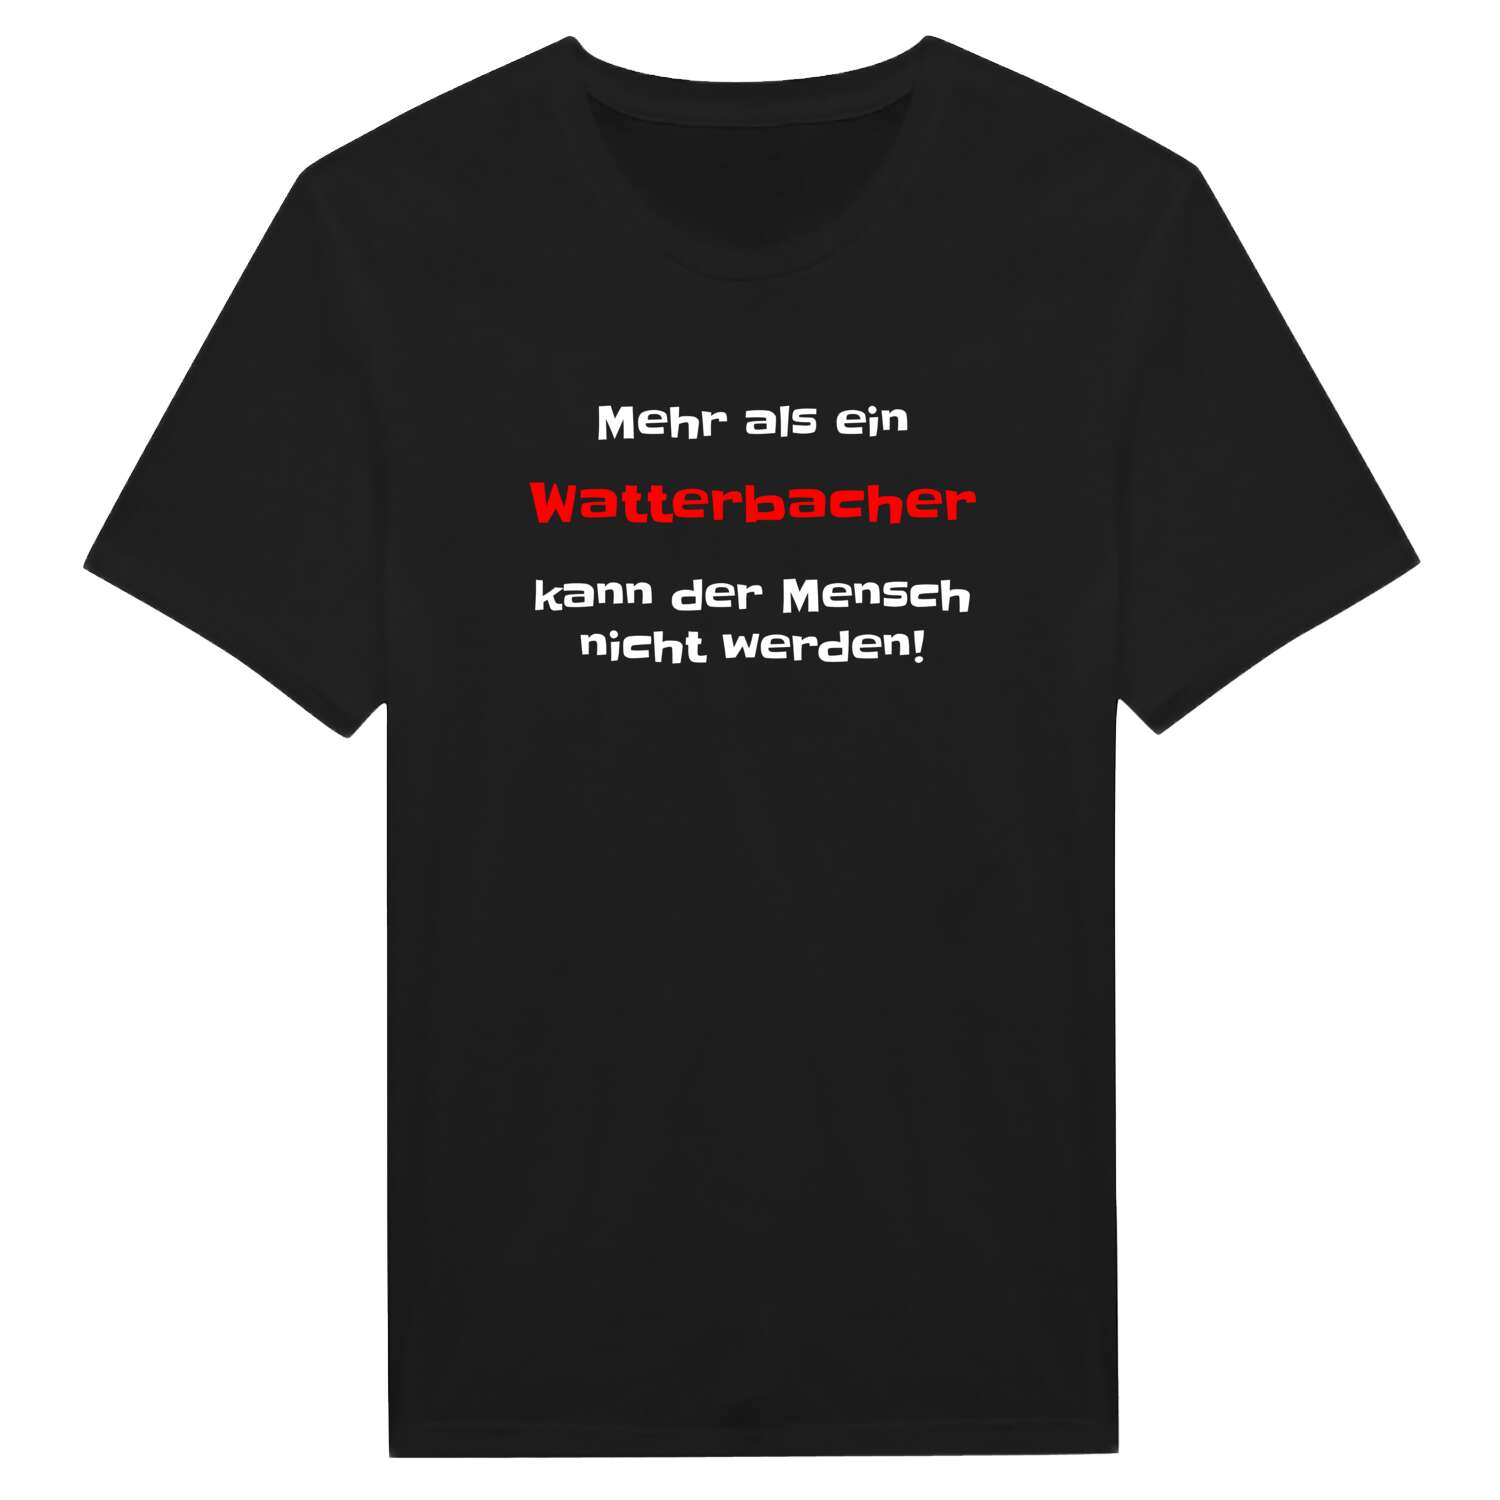 Watterbach T-Shirt »Mehr als ein«